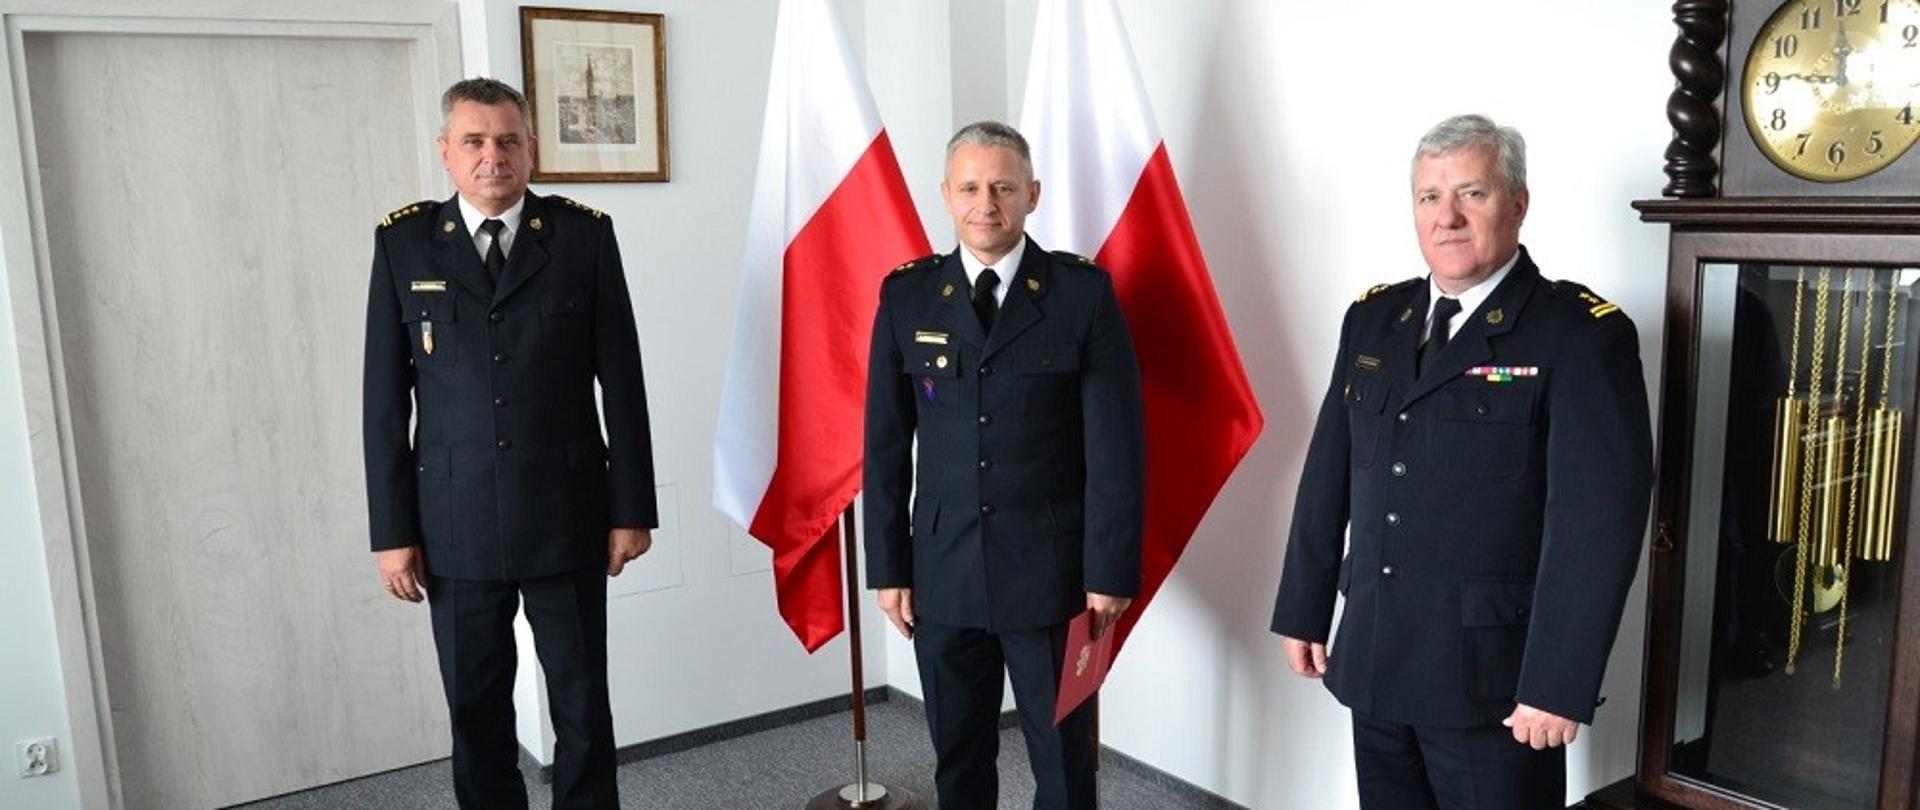 Od lewej Pomorski Komendant Wojewódzki, w środku na tle flag państwowych Hubert Grzesiowski, po prawej Janusz Leszczewski.